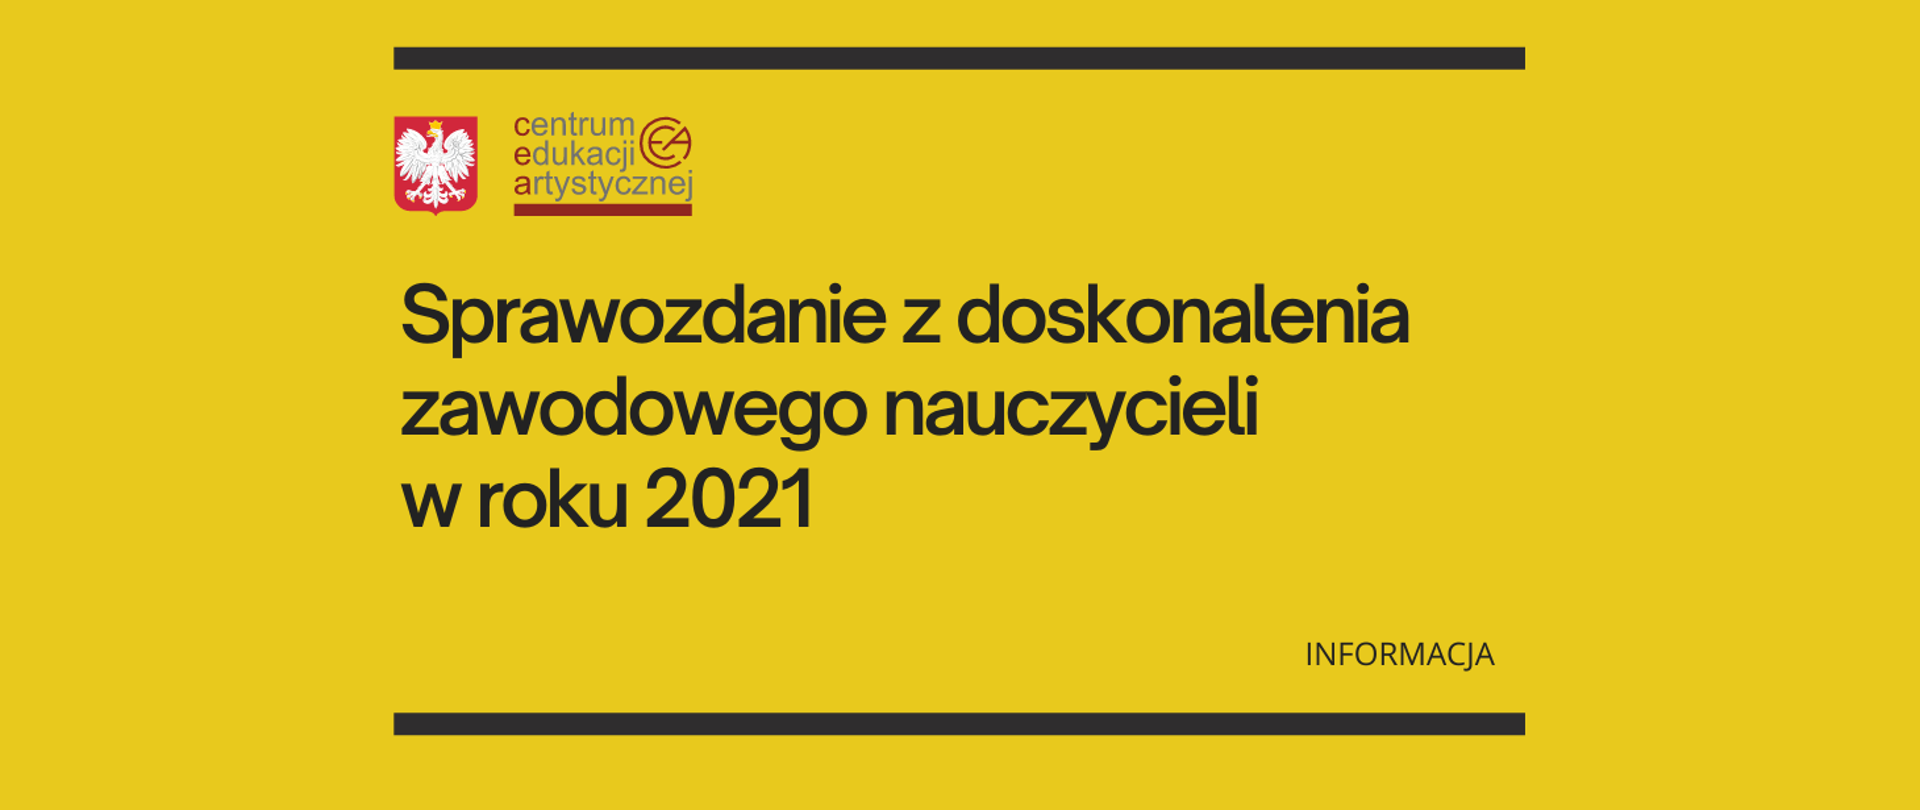 Żółta grafika z tekstem "Sprawozdanie z doskonalenia zawodowego nauczycieli w roku 2021 - informacja" i logo z orzełkiem